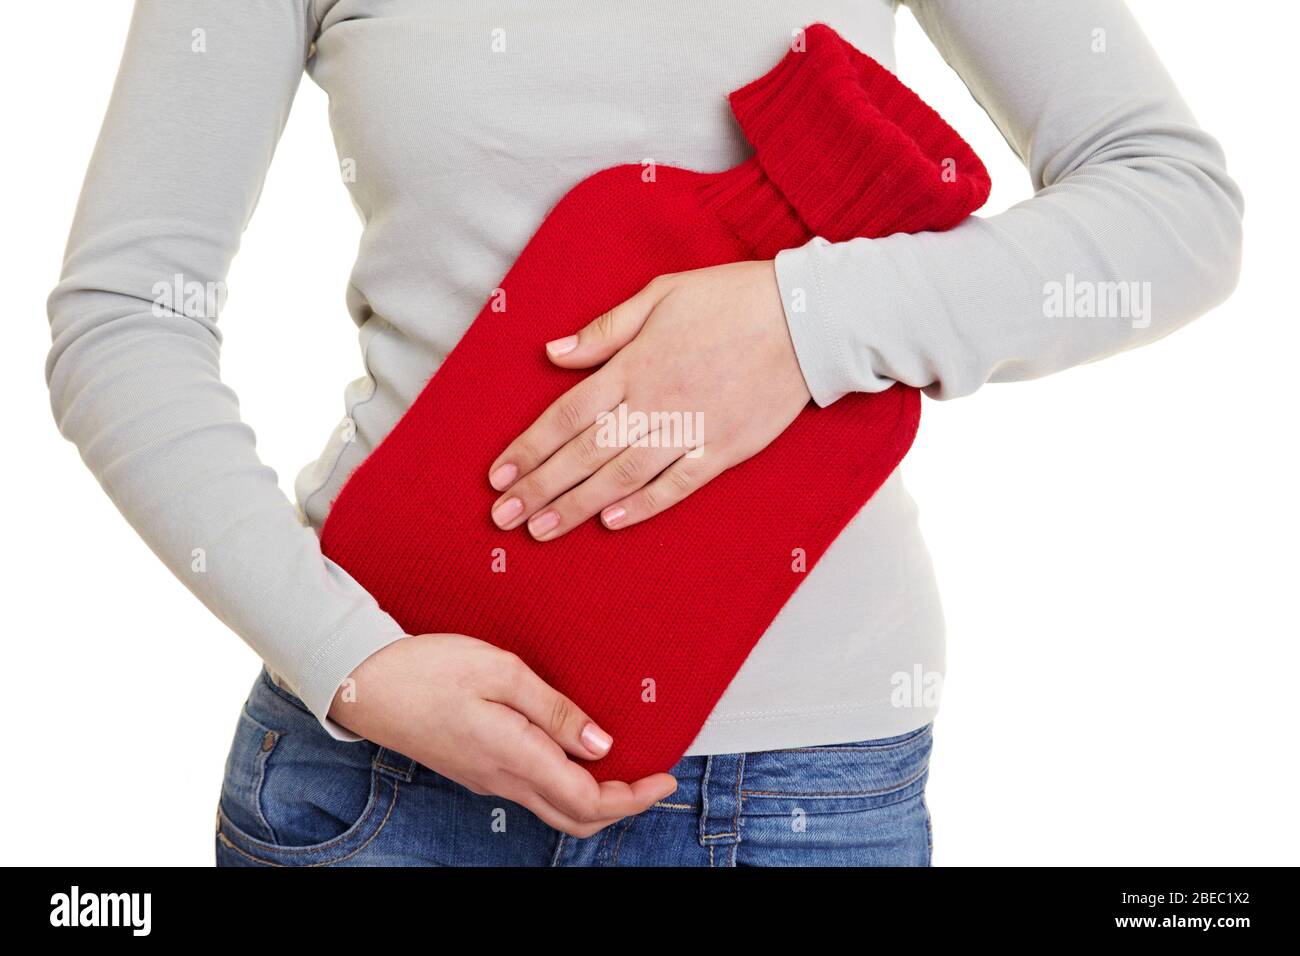 Hände halten eine rote Wärmflasche für Magenschmerzen Stockfoto